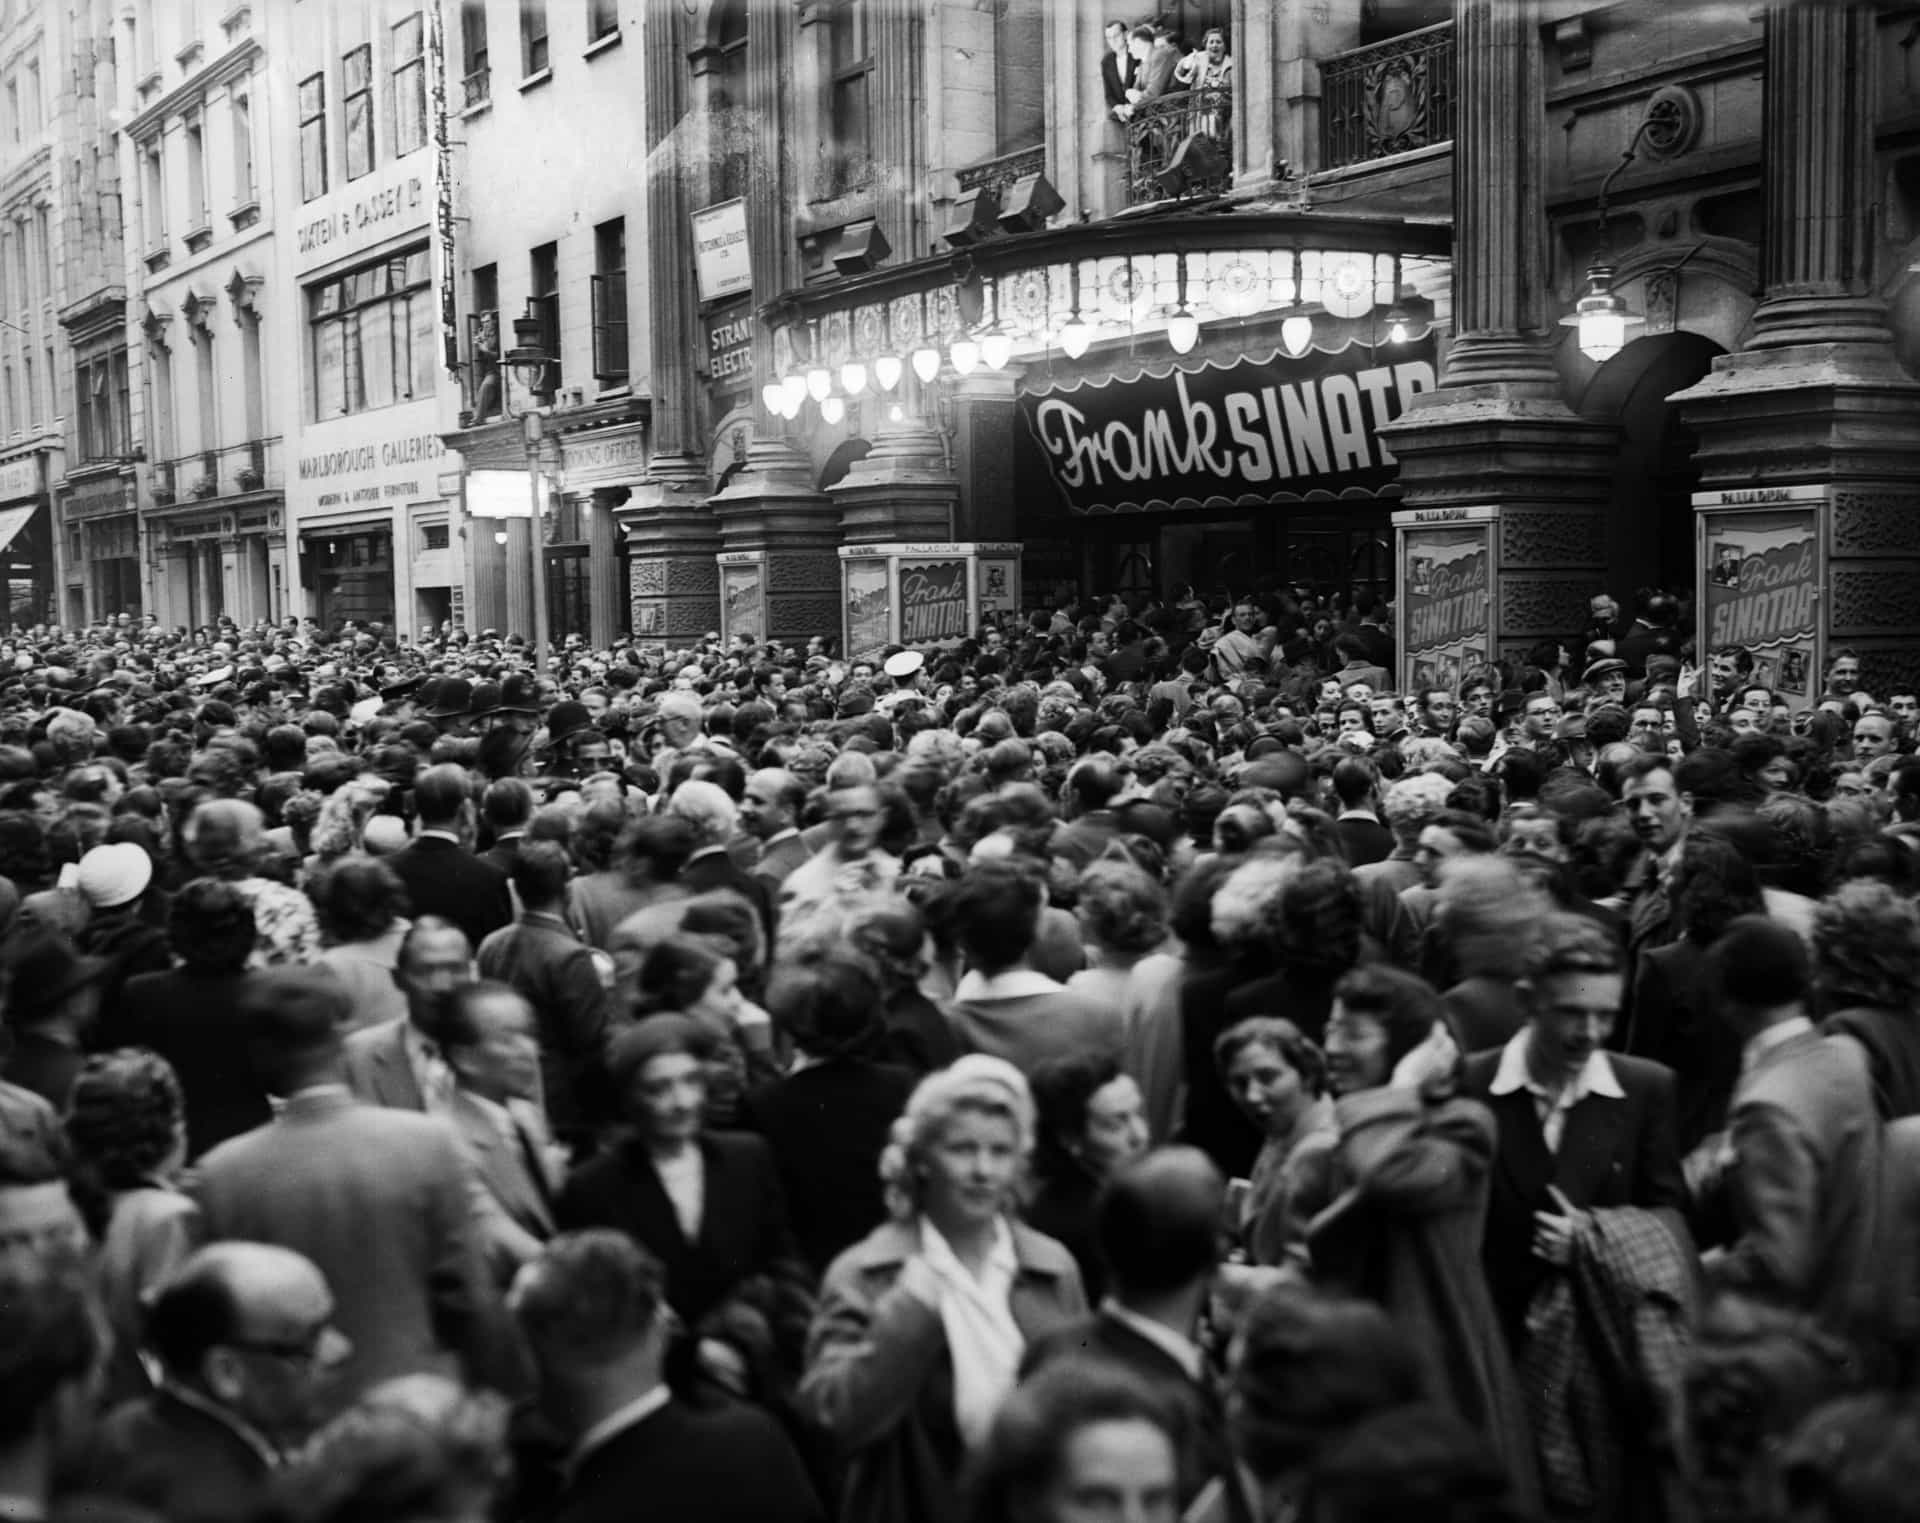 Bei seinem Konzert im Juli 1950 versammeln sich Massen vor dem London Palladium Theater.